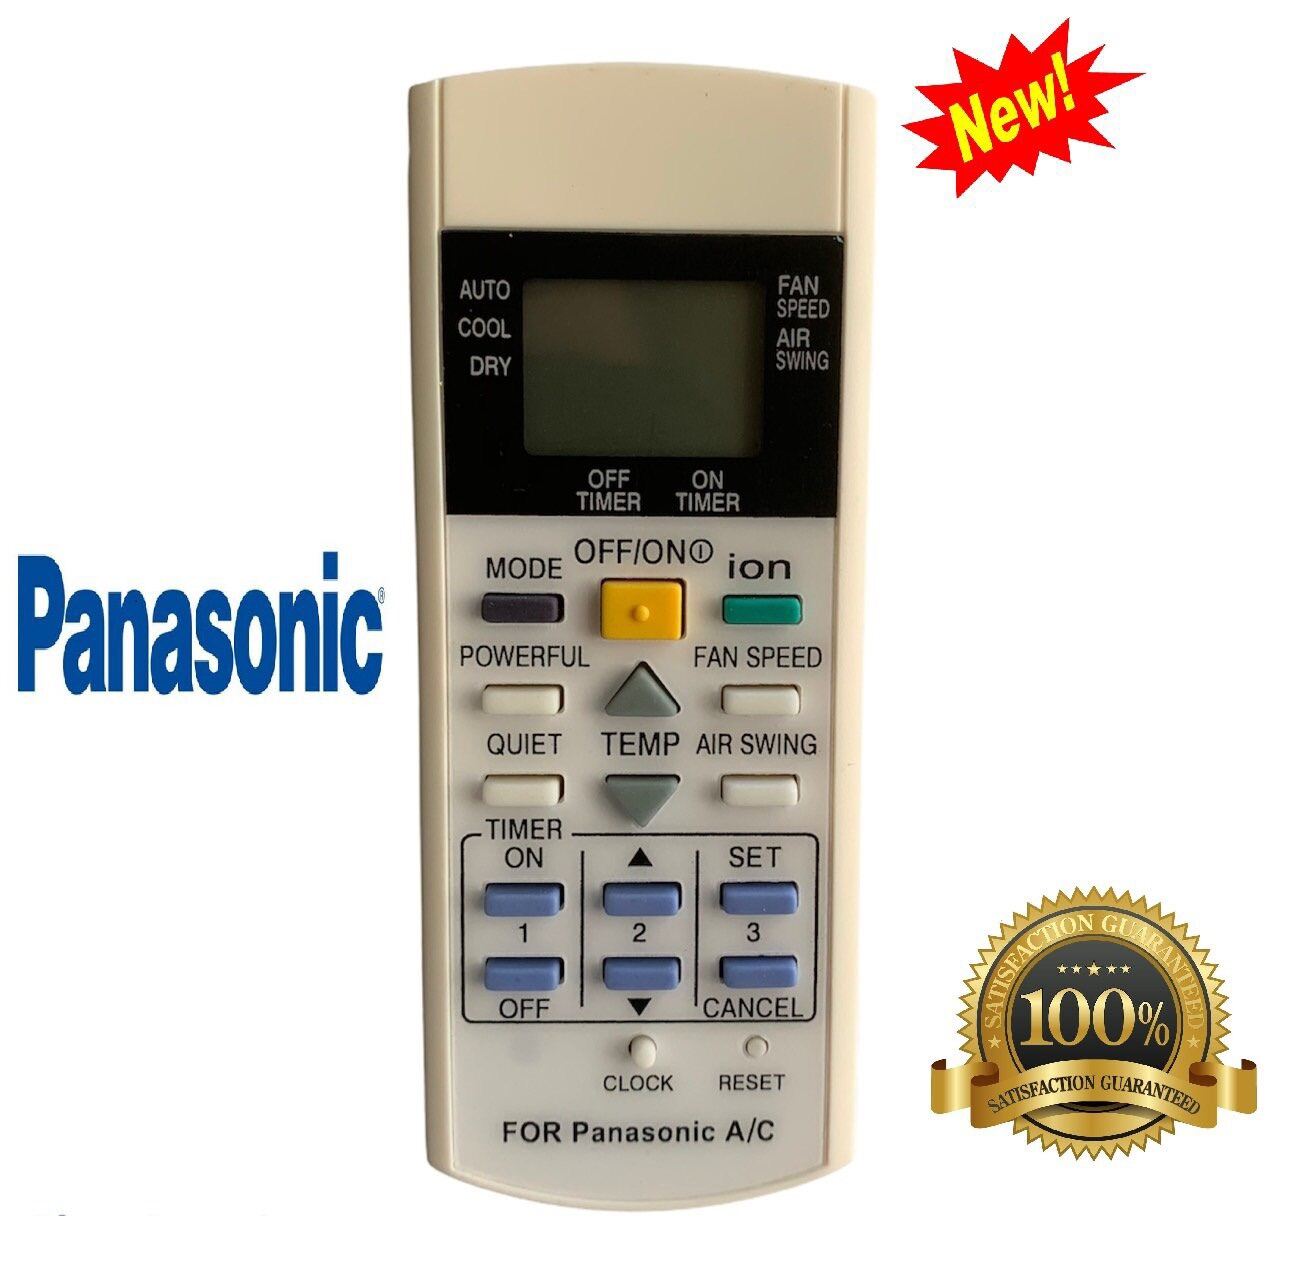 Bảng giá Điều khiển điều hoà Panasonic remote máy lạnh panasonic- Hàng mới